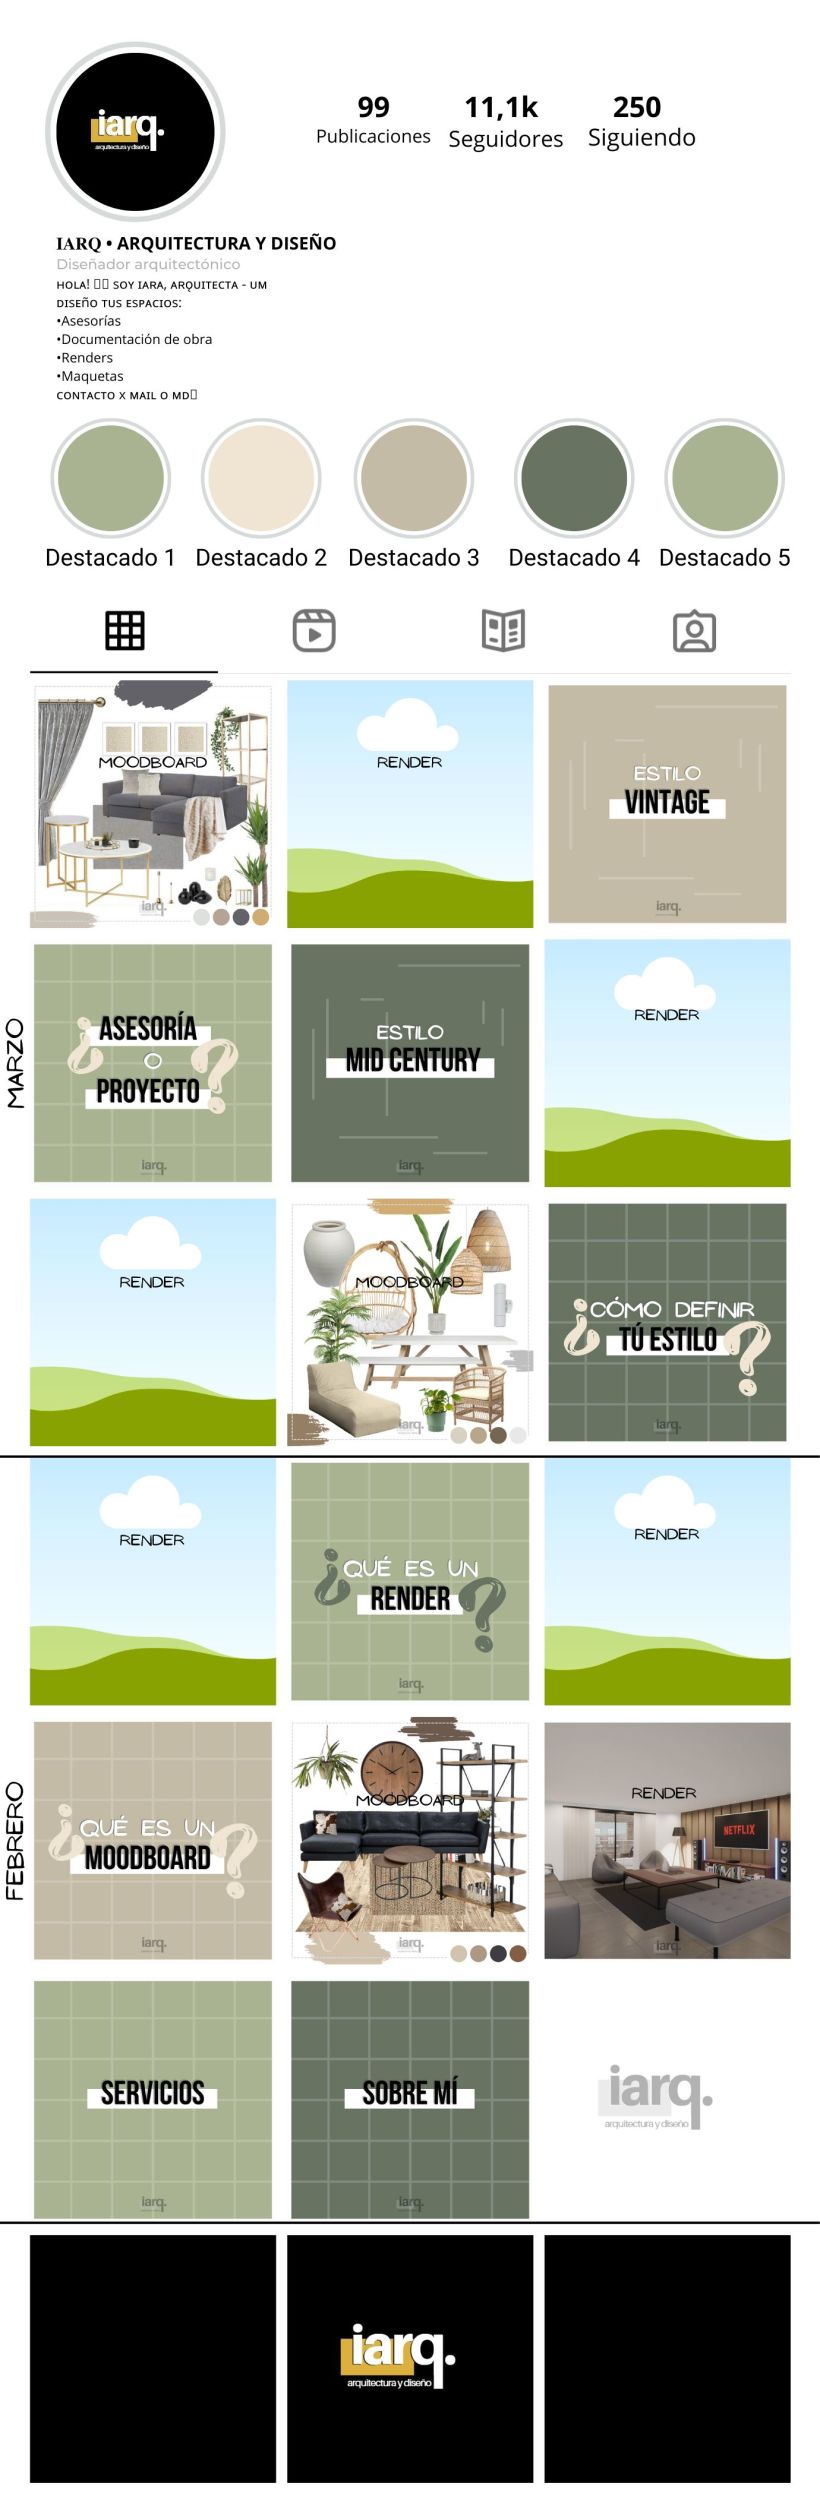 Mi proyecto del curso: Diseño de feed de Instagram con Canva 2